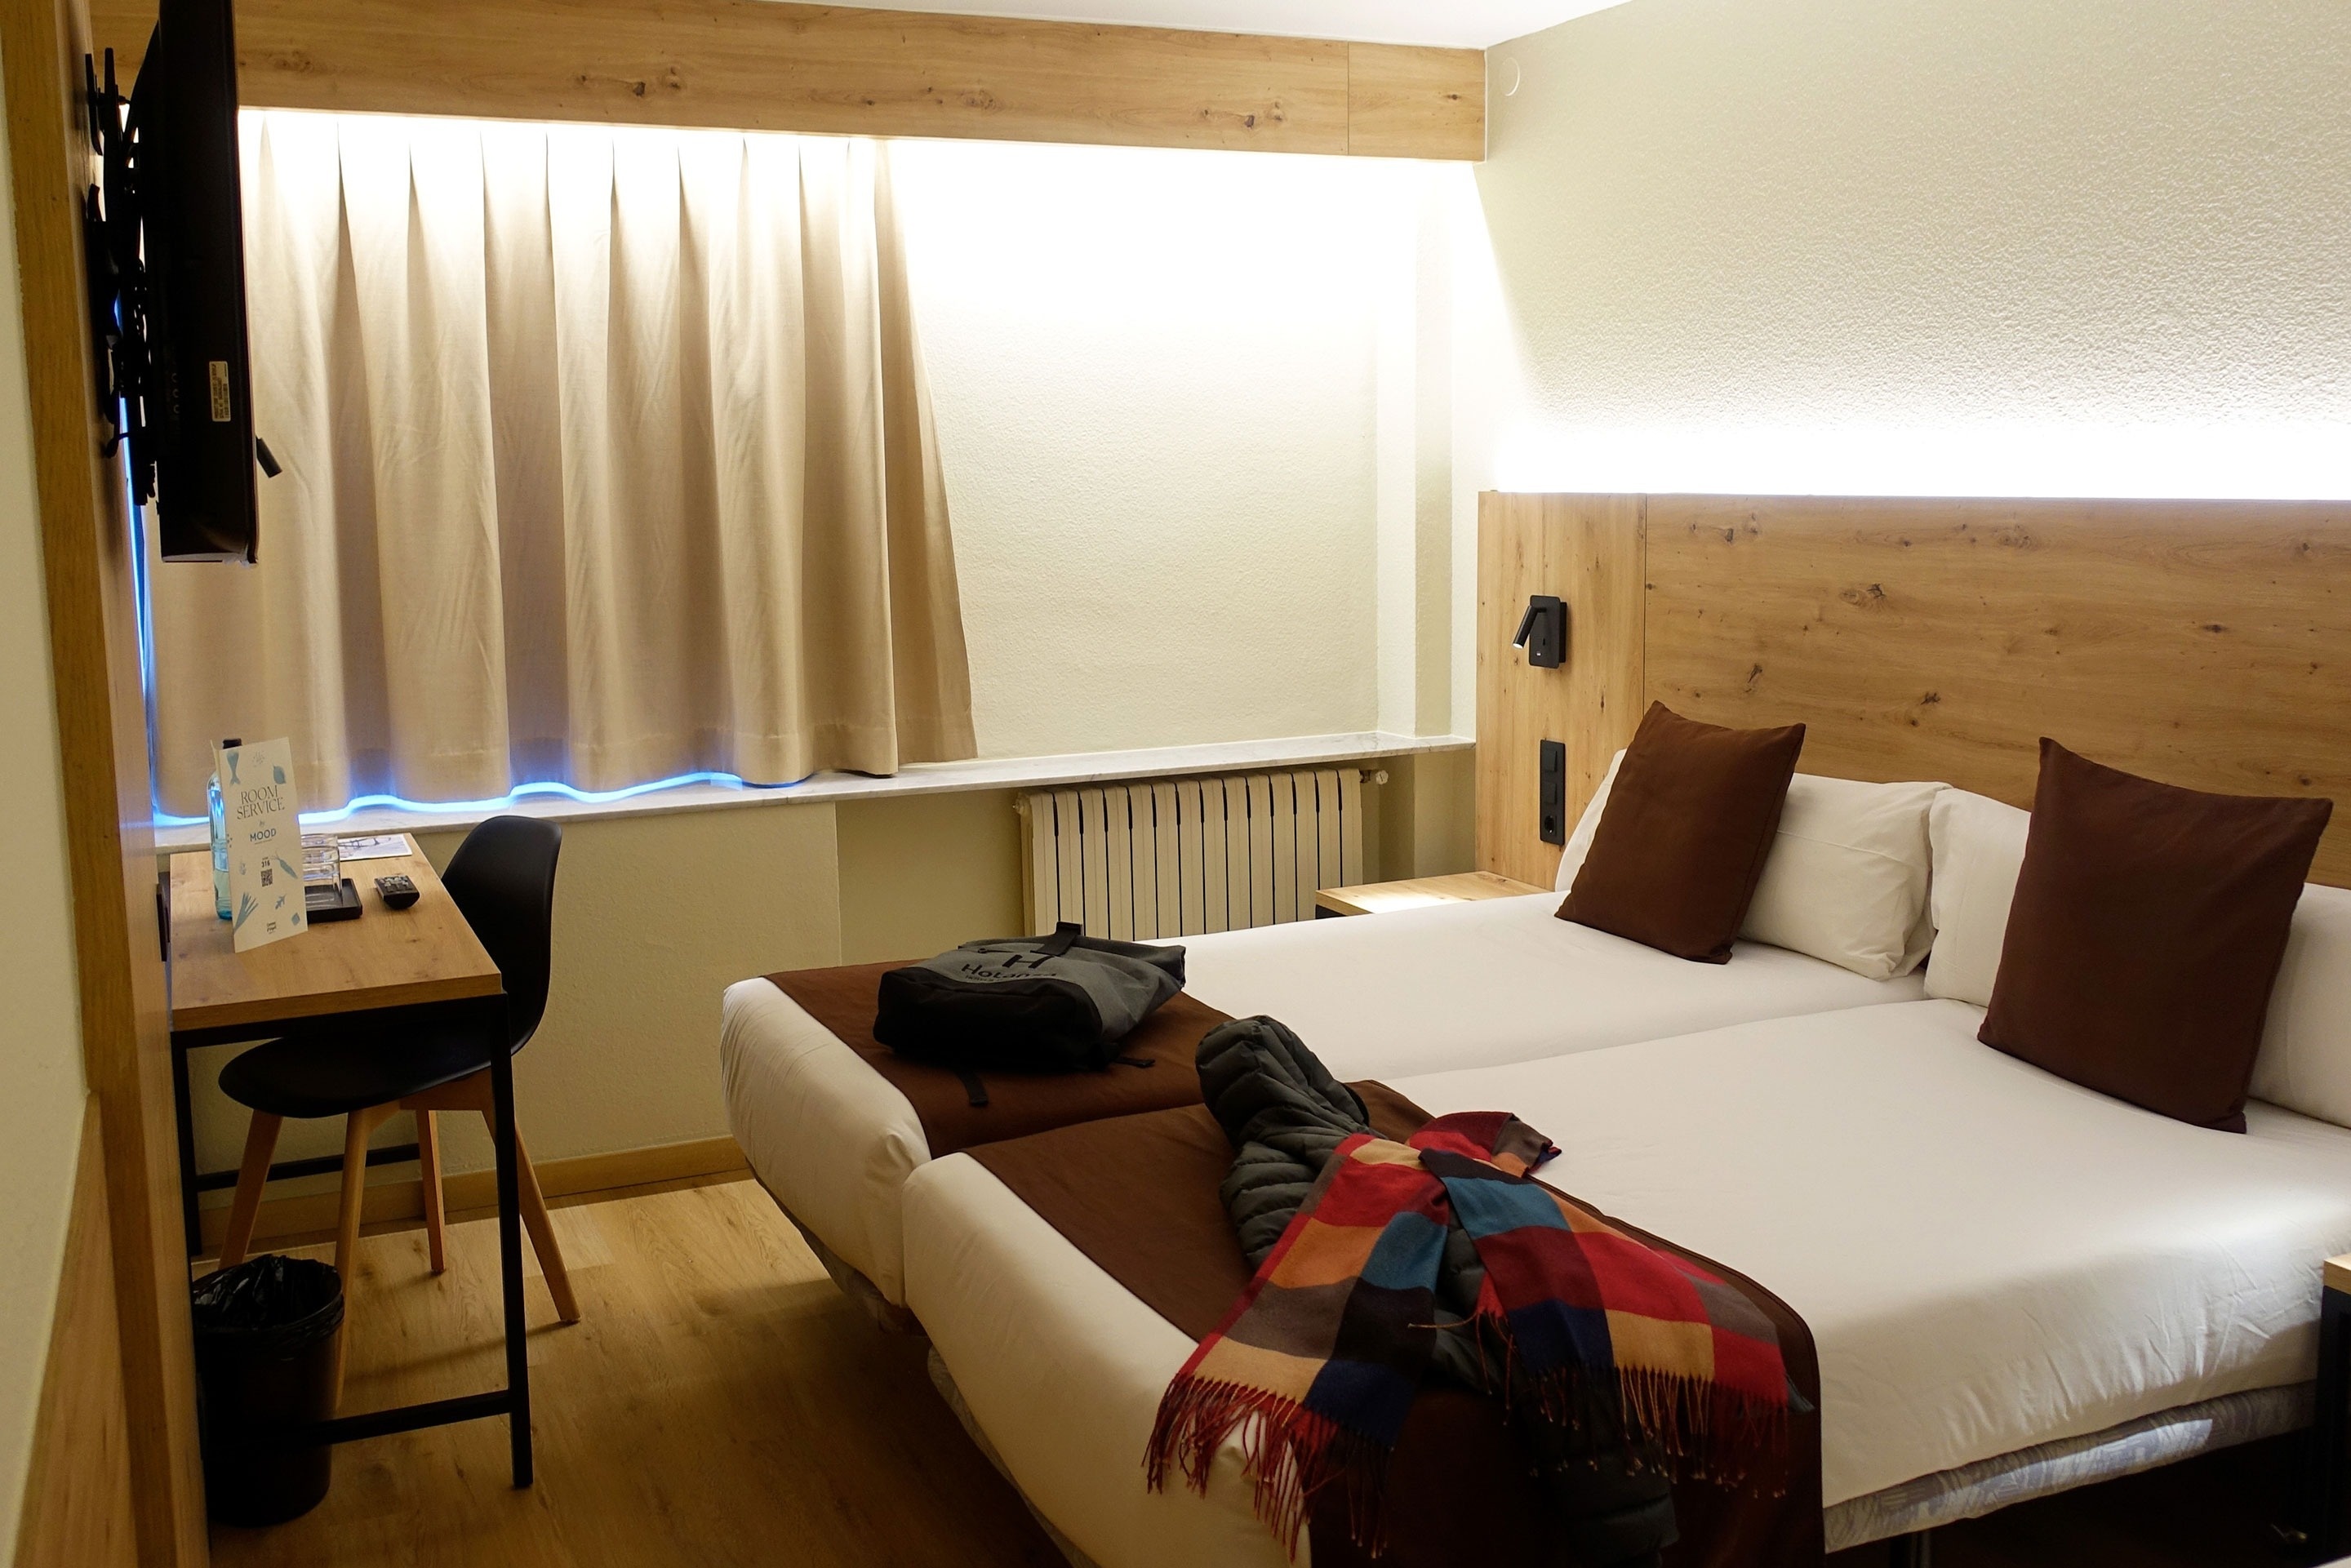 una habitació d' hotel amb dues camas i un radiador